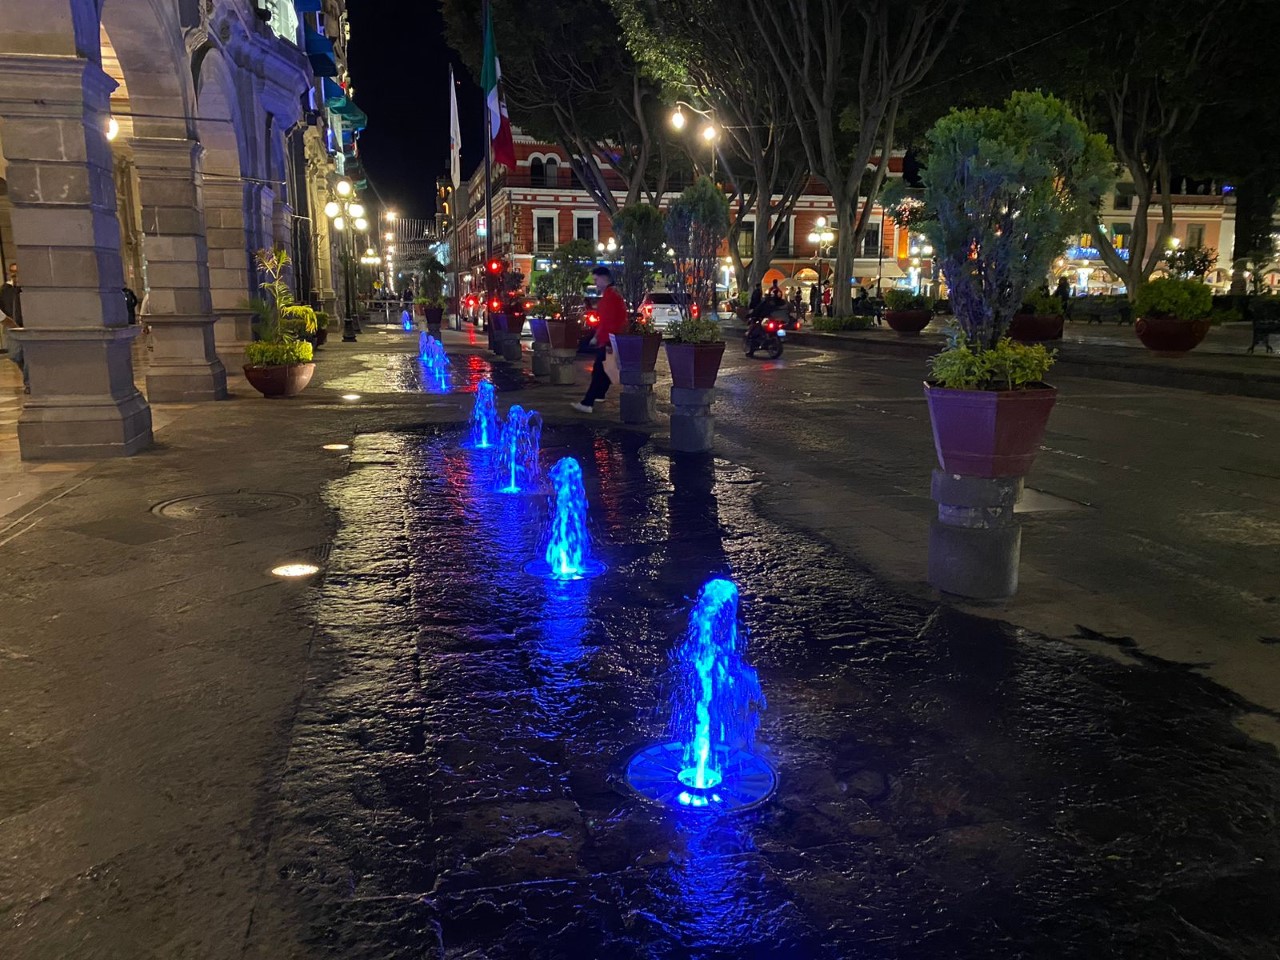 Se iluminan de azul las fuentes de la ciudad por fiestas navideñas